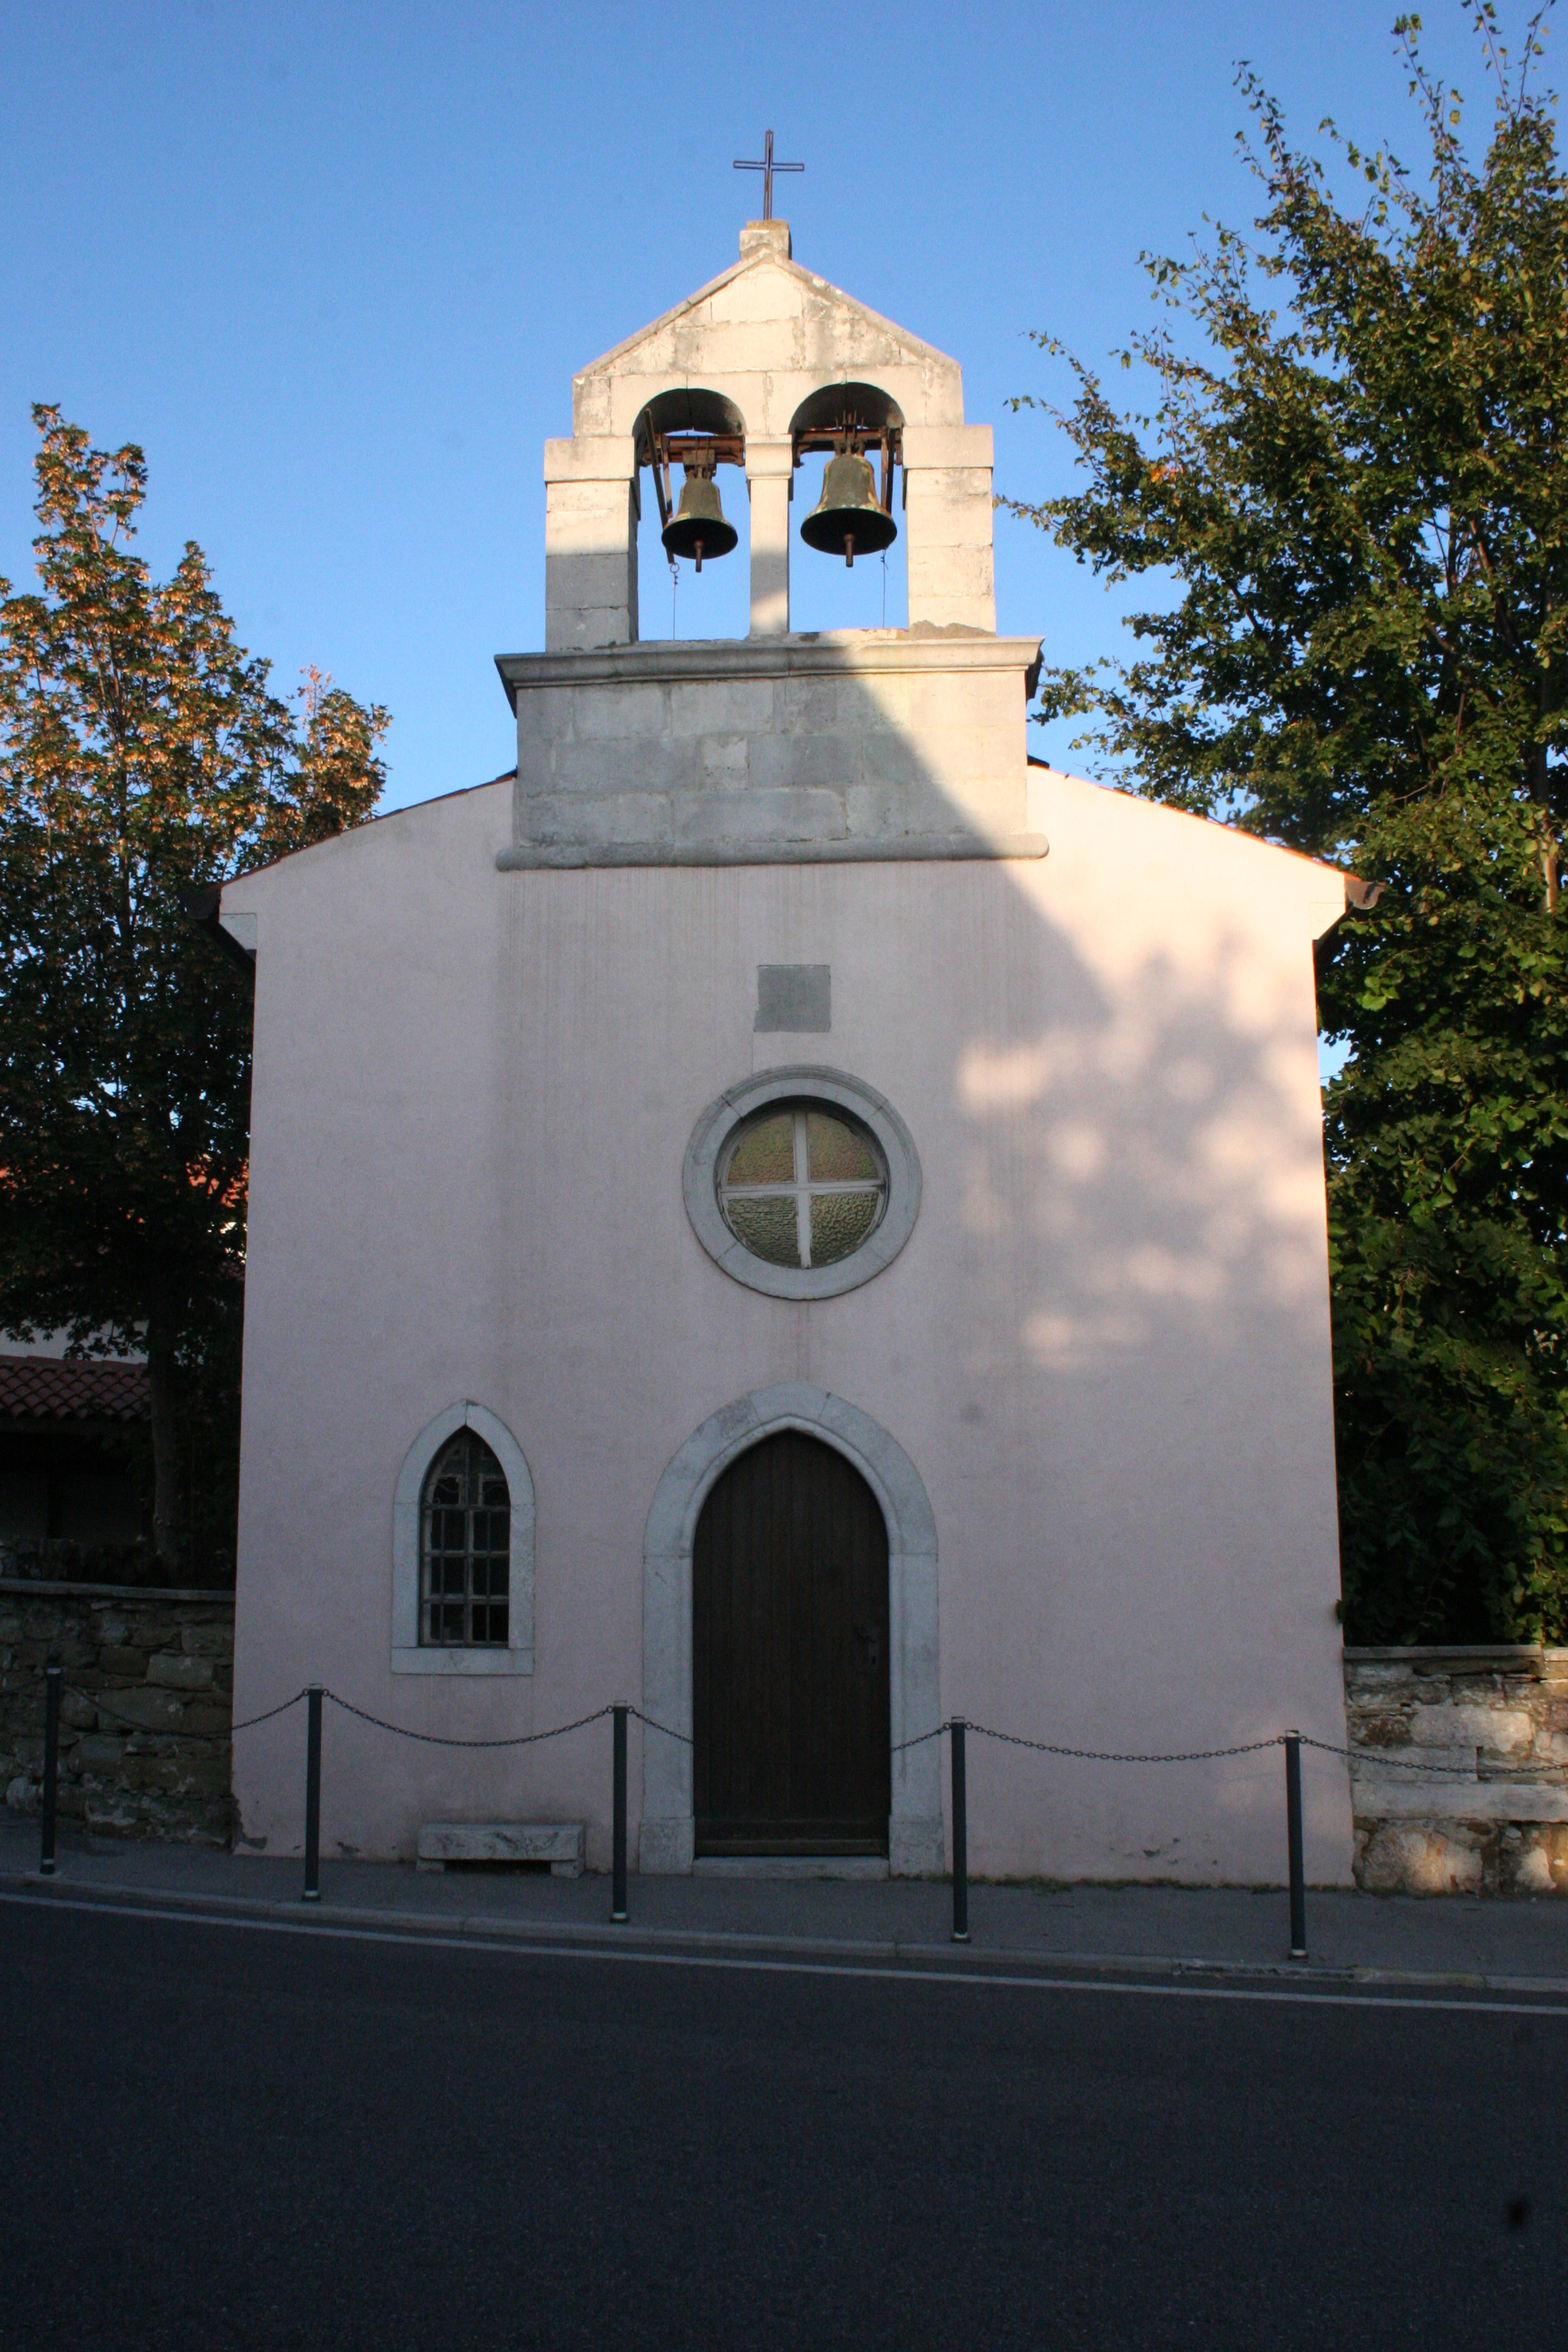 Chiesa filiale di Santa Maria della Salvia (chiesa, filiale) - Trieste (TS) 